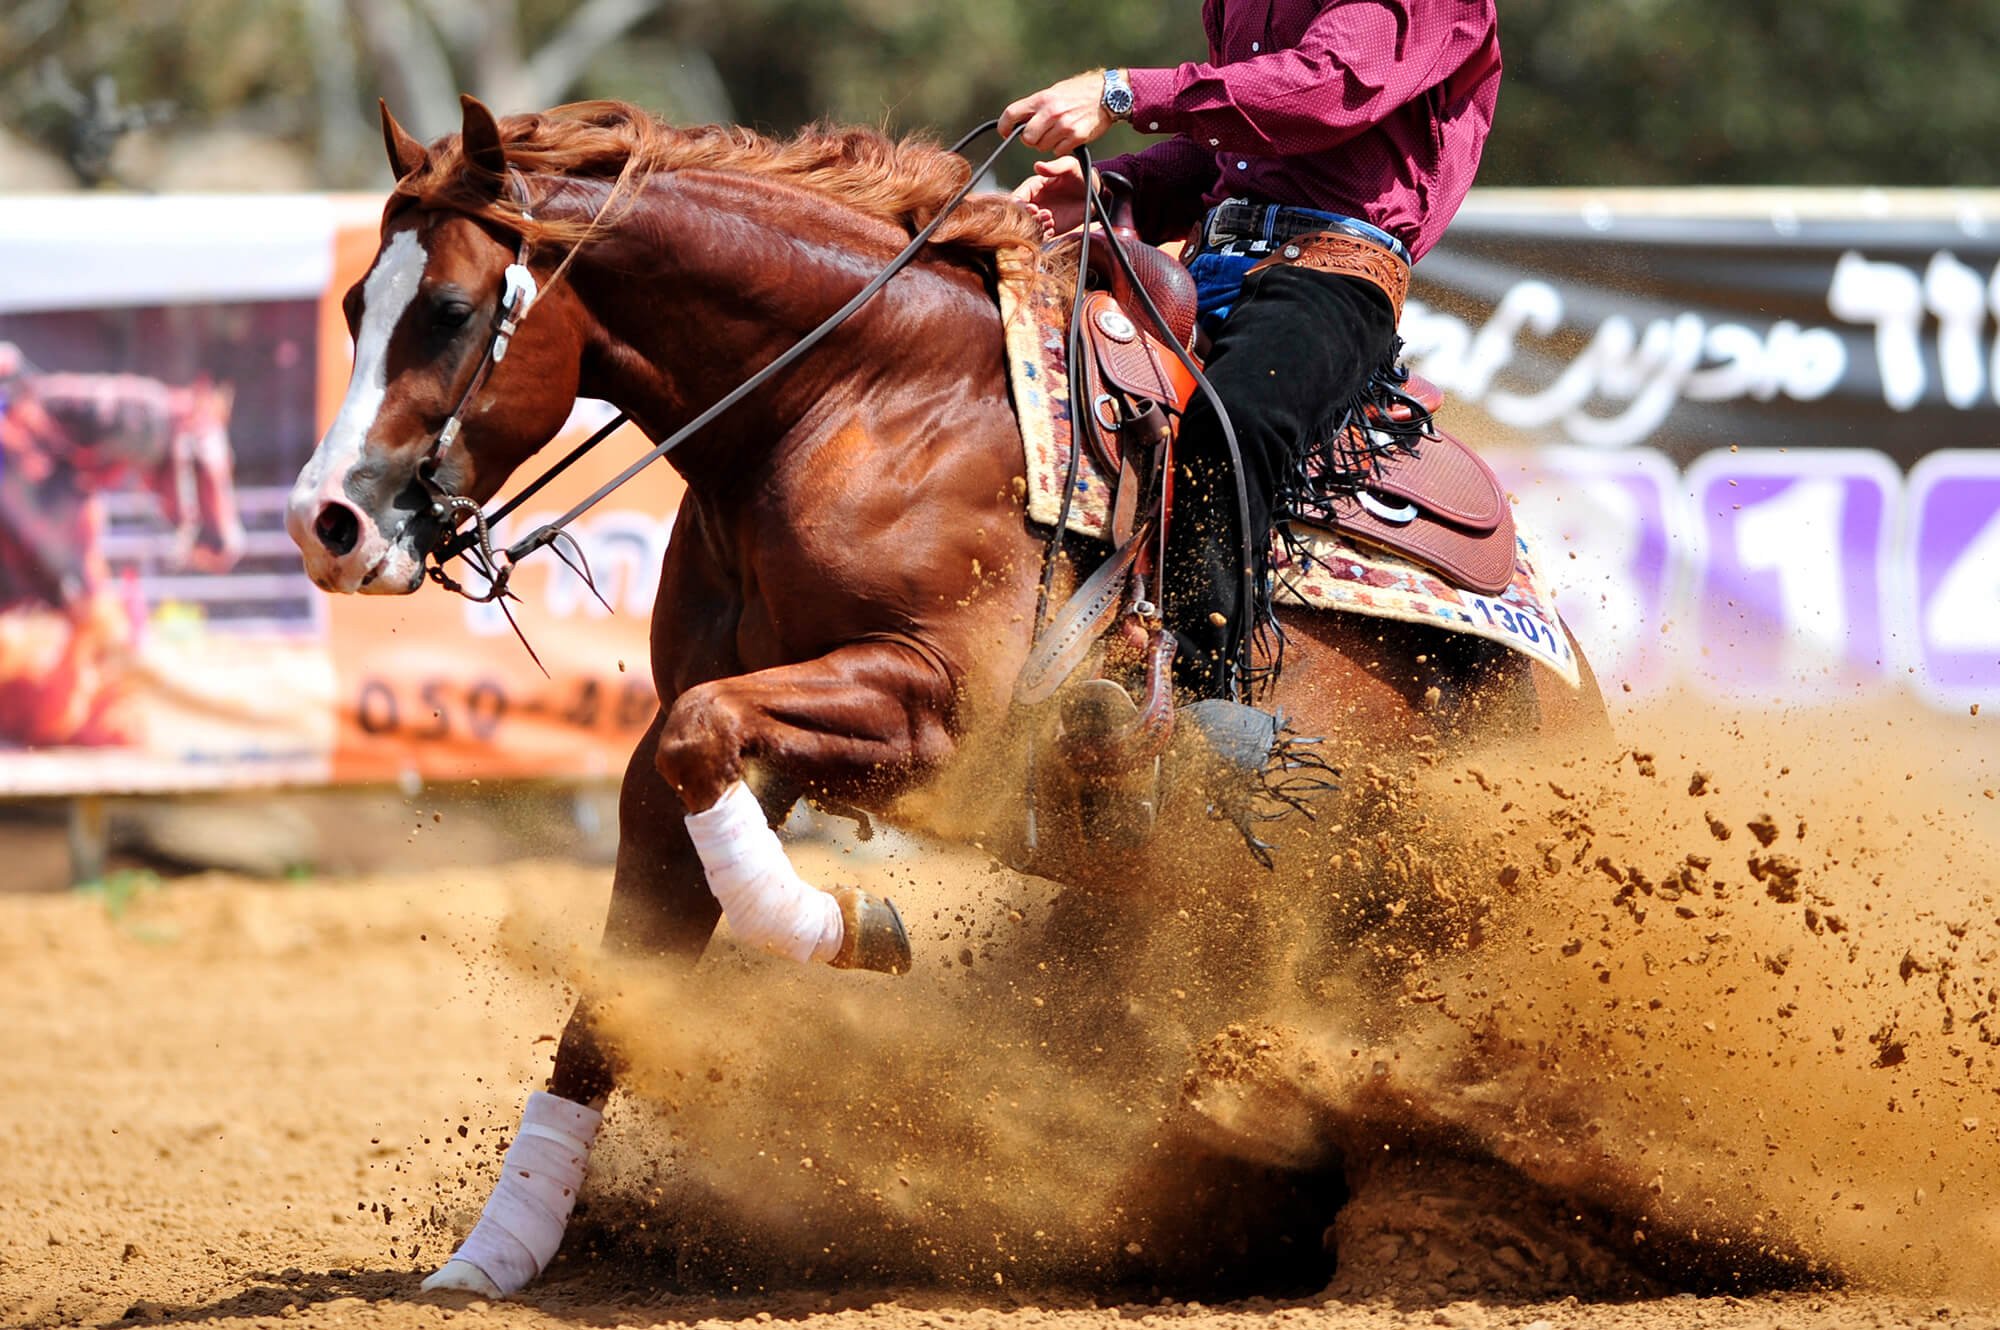 Westernreiter führt auf einem kastanienbraunen Pferd eine scharfe Wendung im Reining-Wettbewerb aus, wobei Sand aufgewirbelt wird, vor einem Publikum mit Werbebannern im Hintergrund.